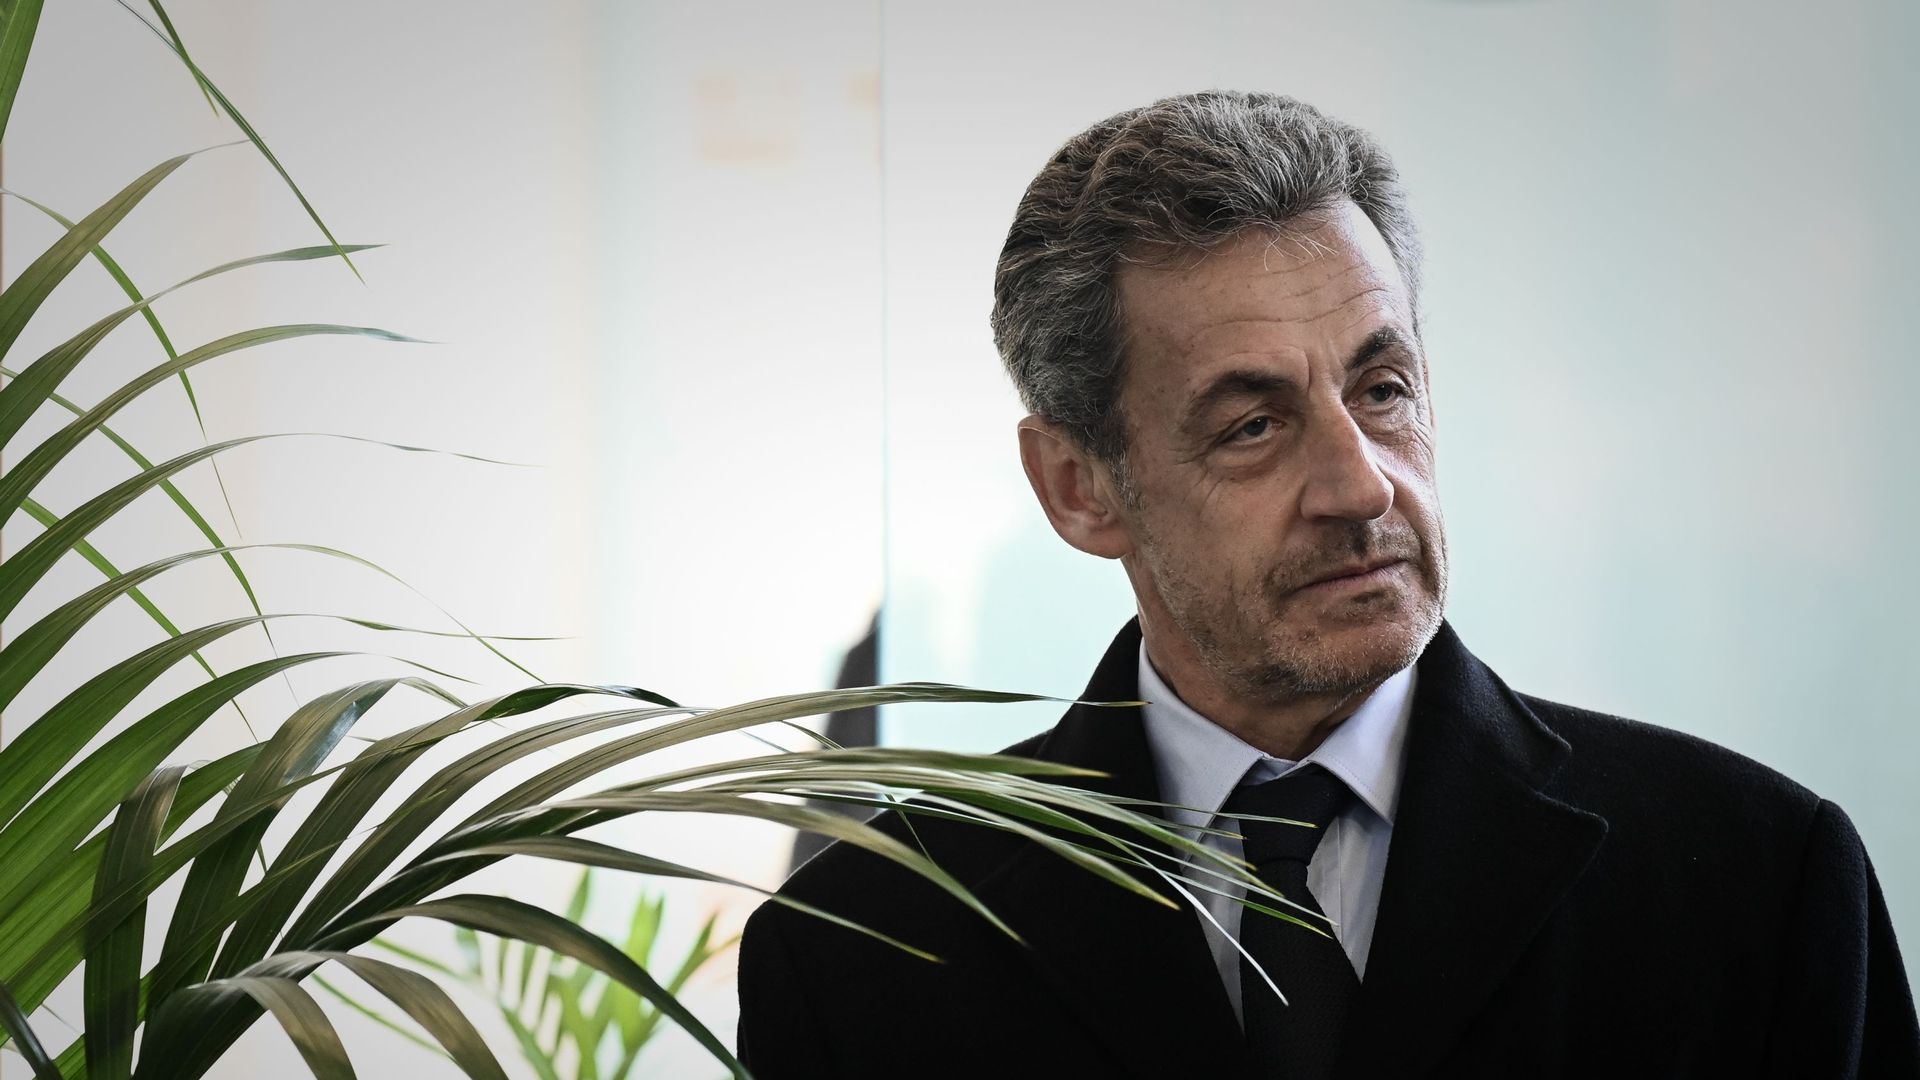 Affaire des "écoutes": Nicolas Sarkozy sera jugé pour corruption